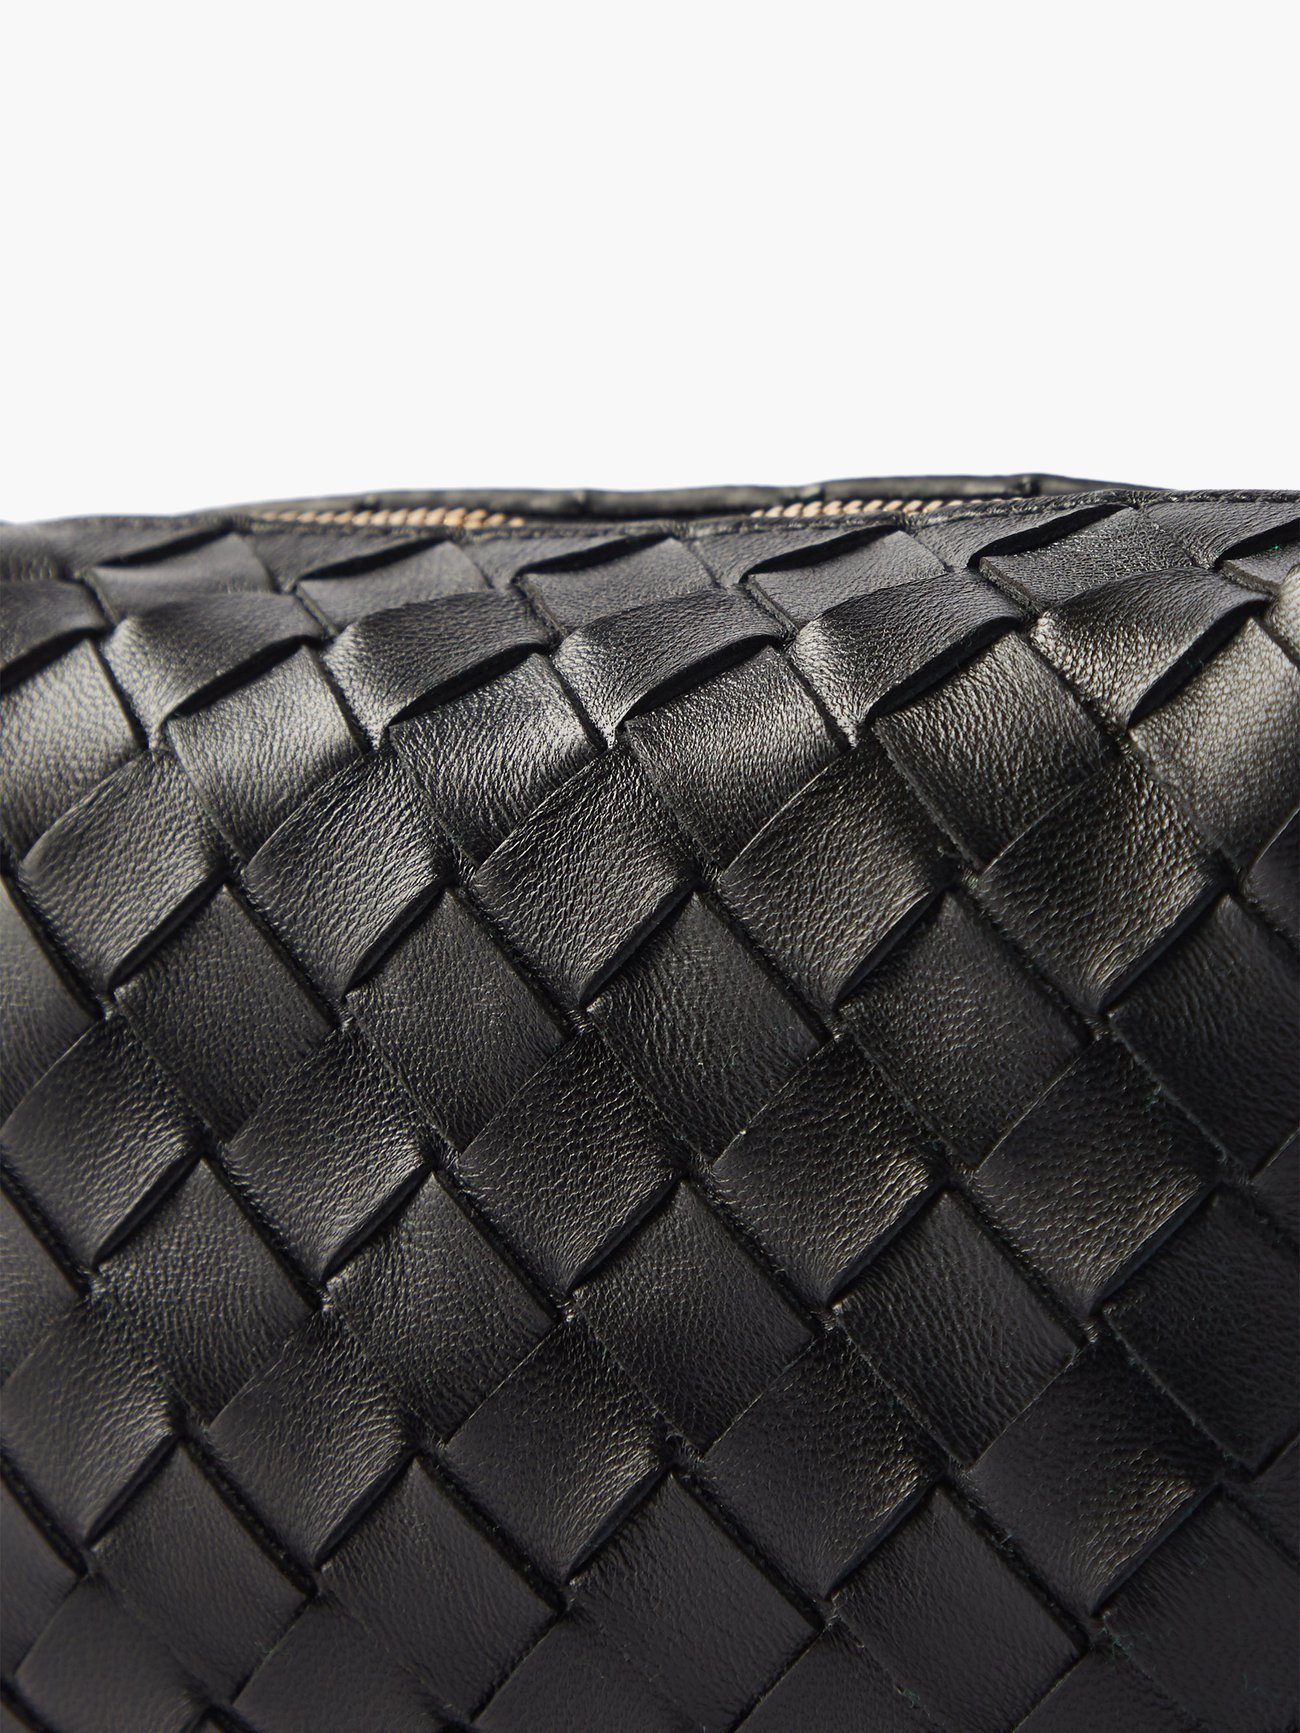 Loop leather mini bag Bottega Veneta Black in Leather - 28517421